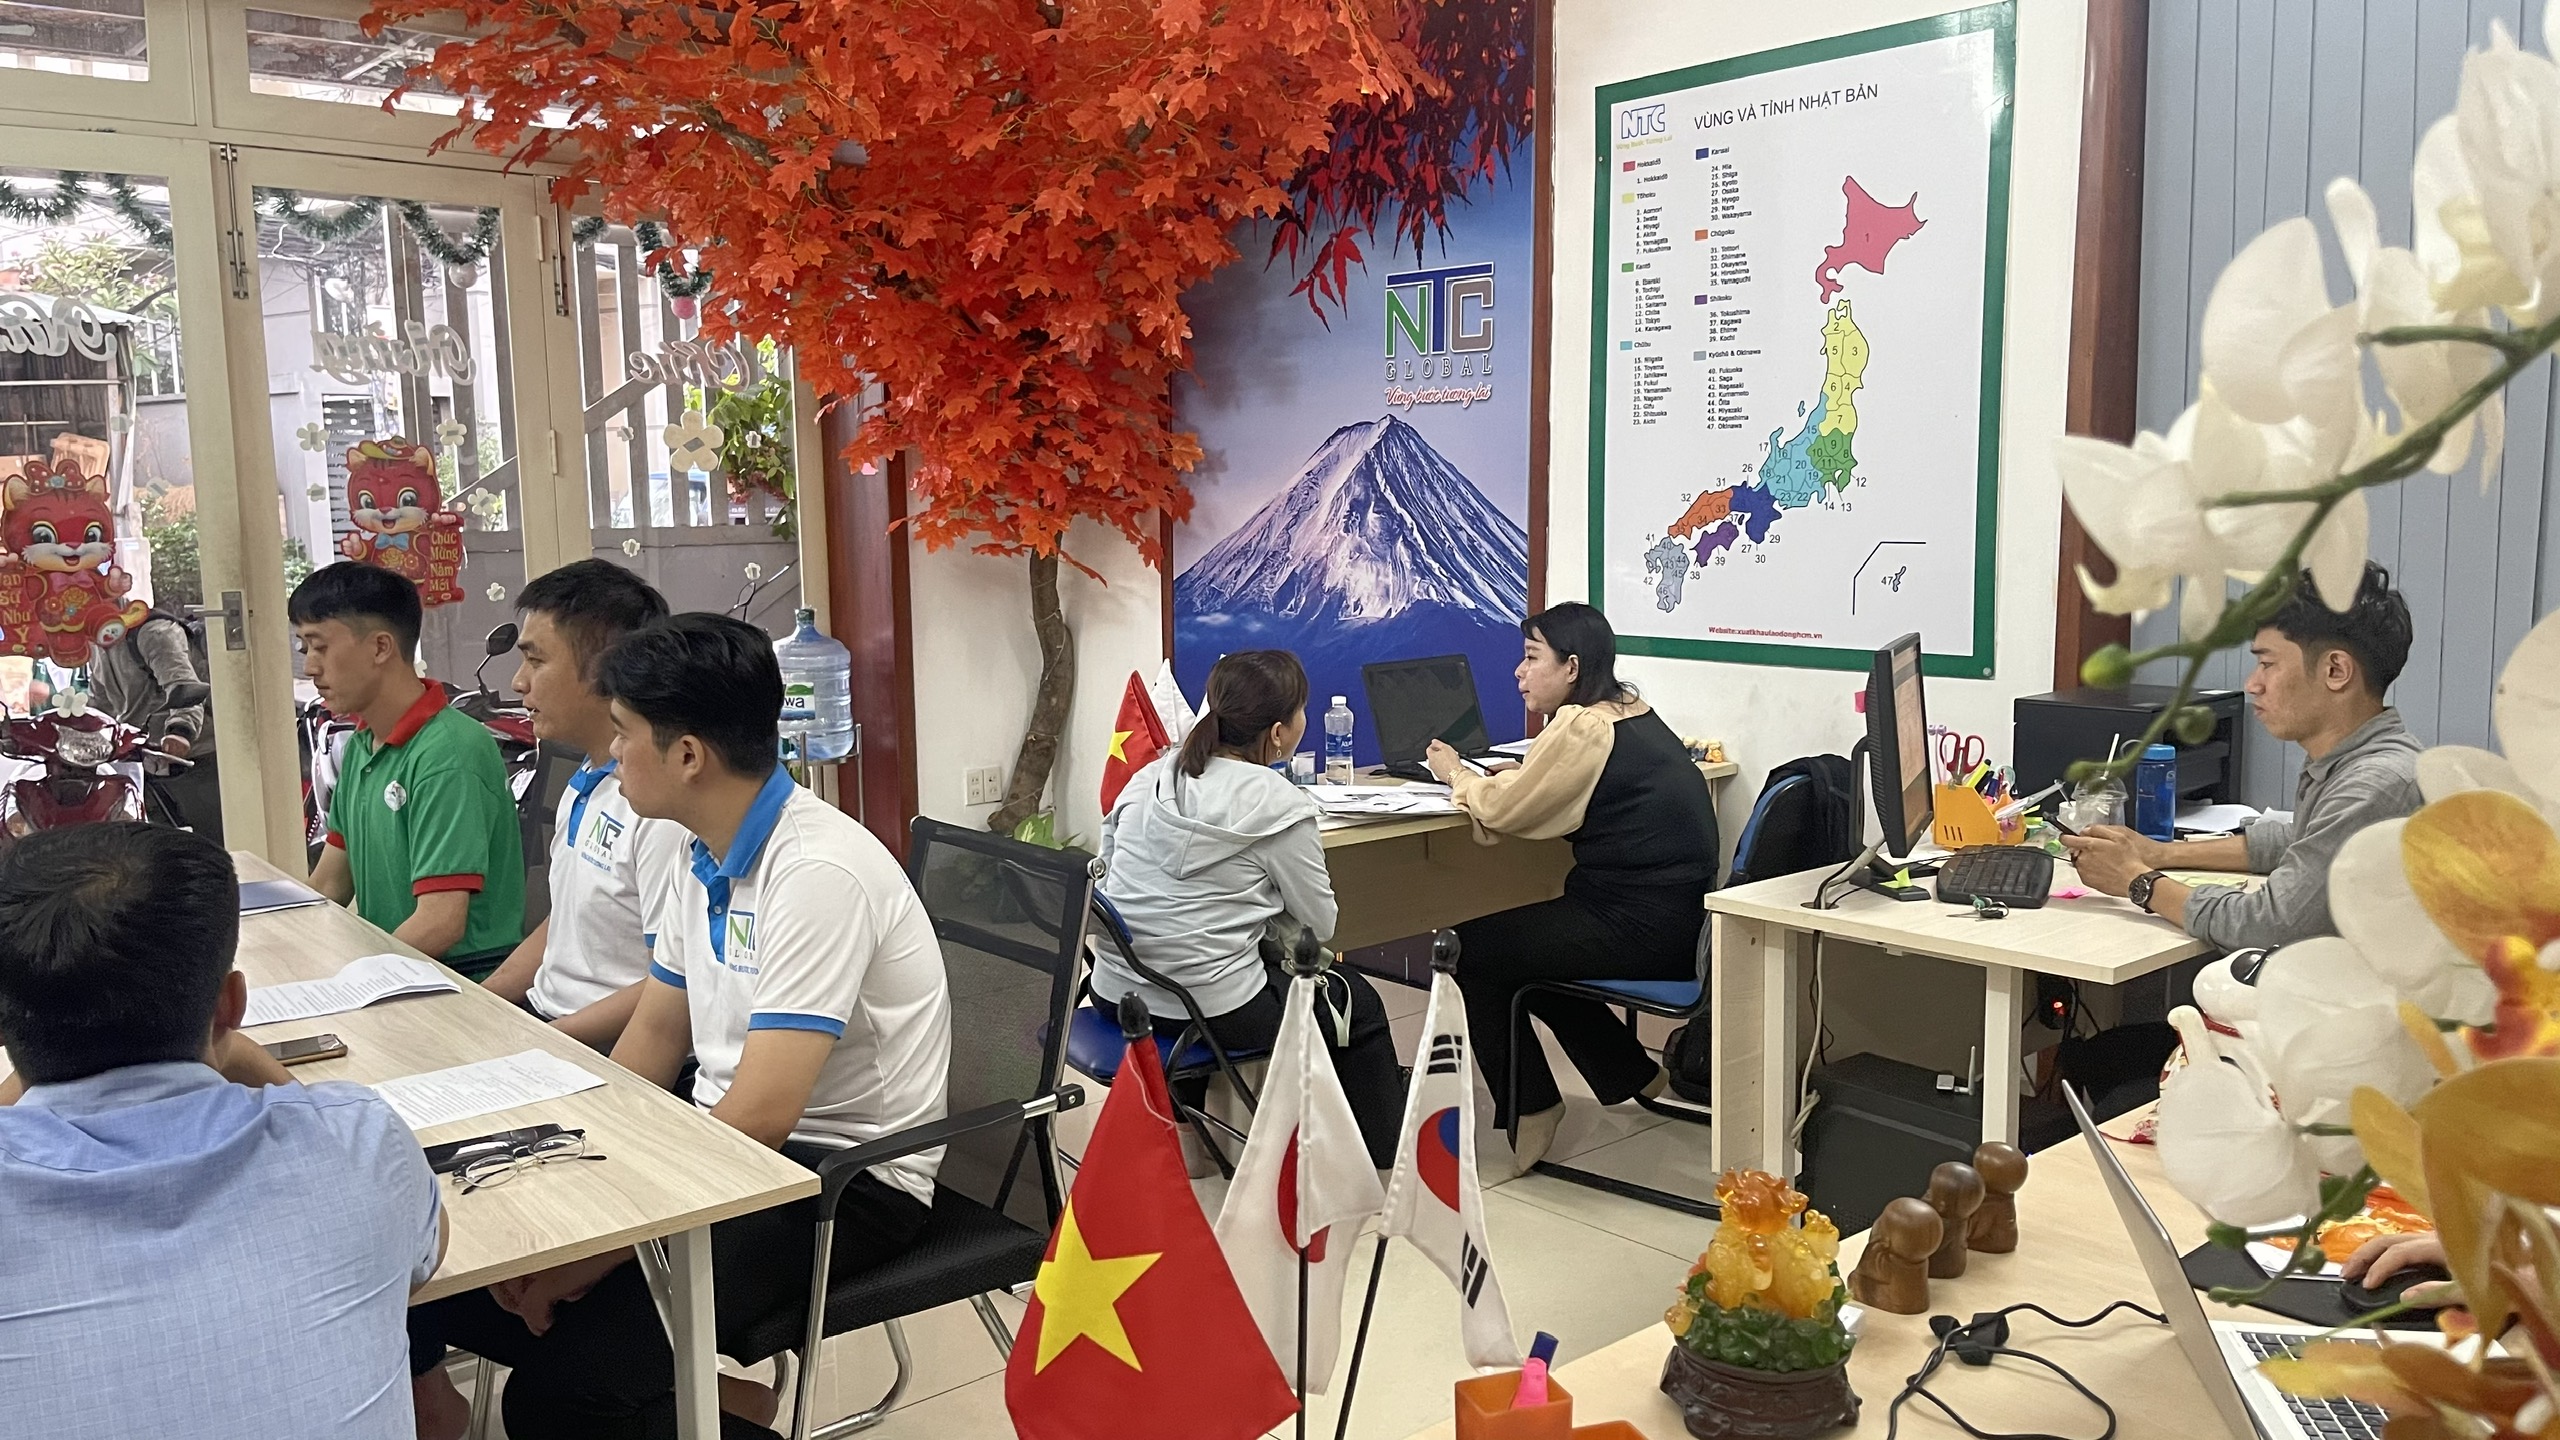 “NTC Global: Đối Tác Uy Tín Cho Sự Thành Công trong XKLD và Du Học tại Nhật Bản và Hàn Quốc”